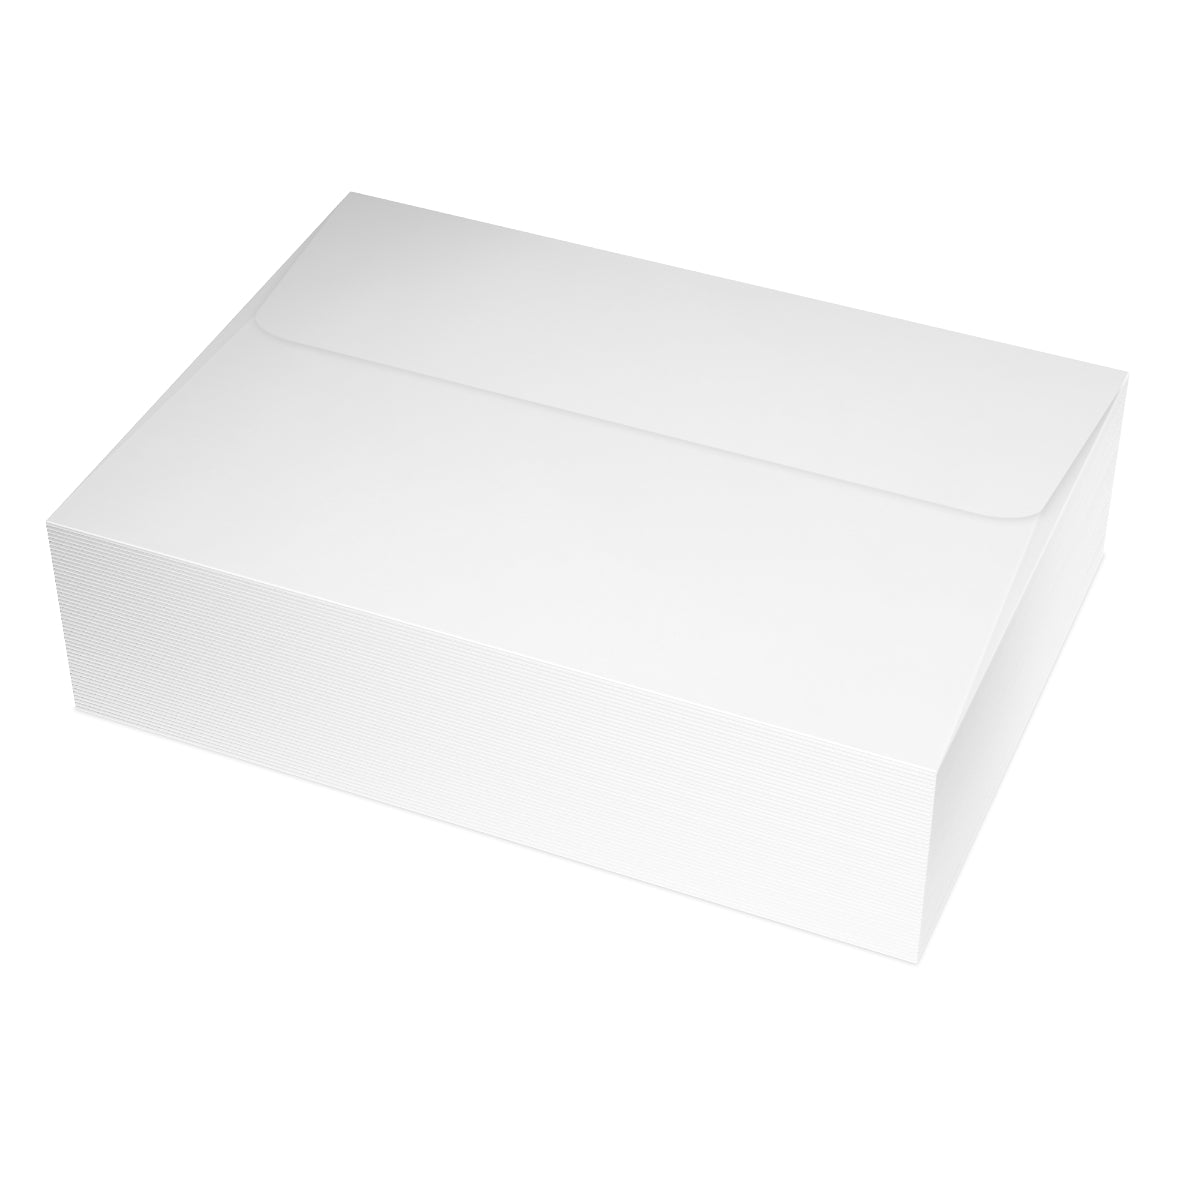 Cartes à lettres mates pliées Le Luberon + Enveloppes (10pcs)